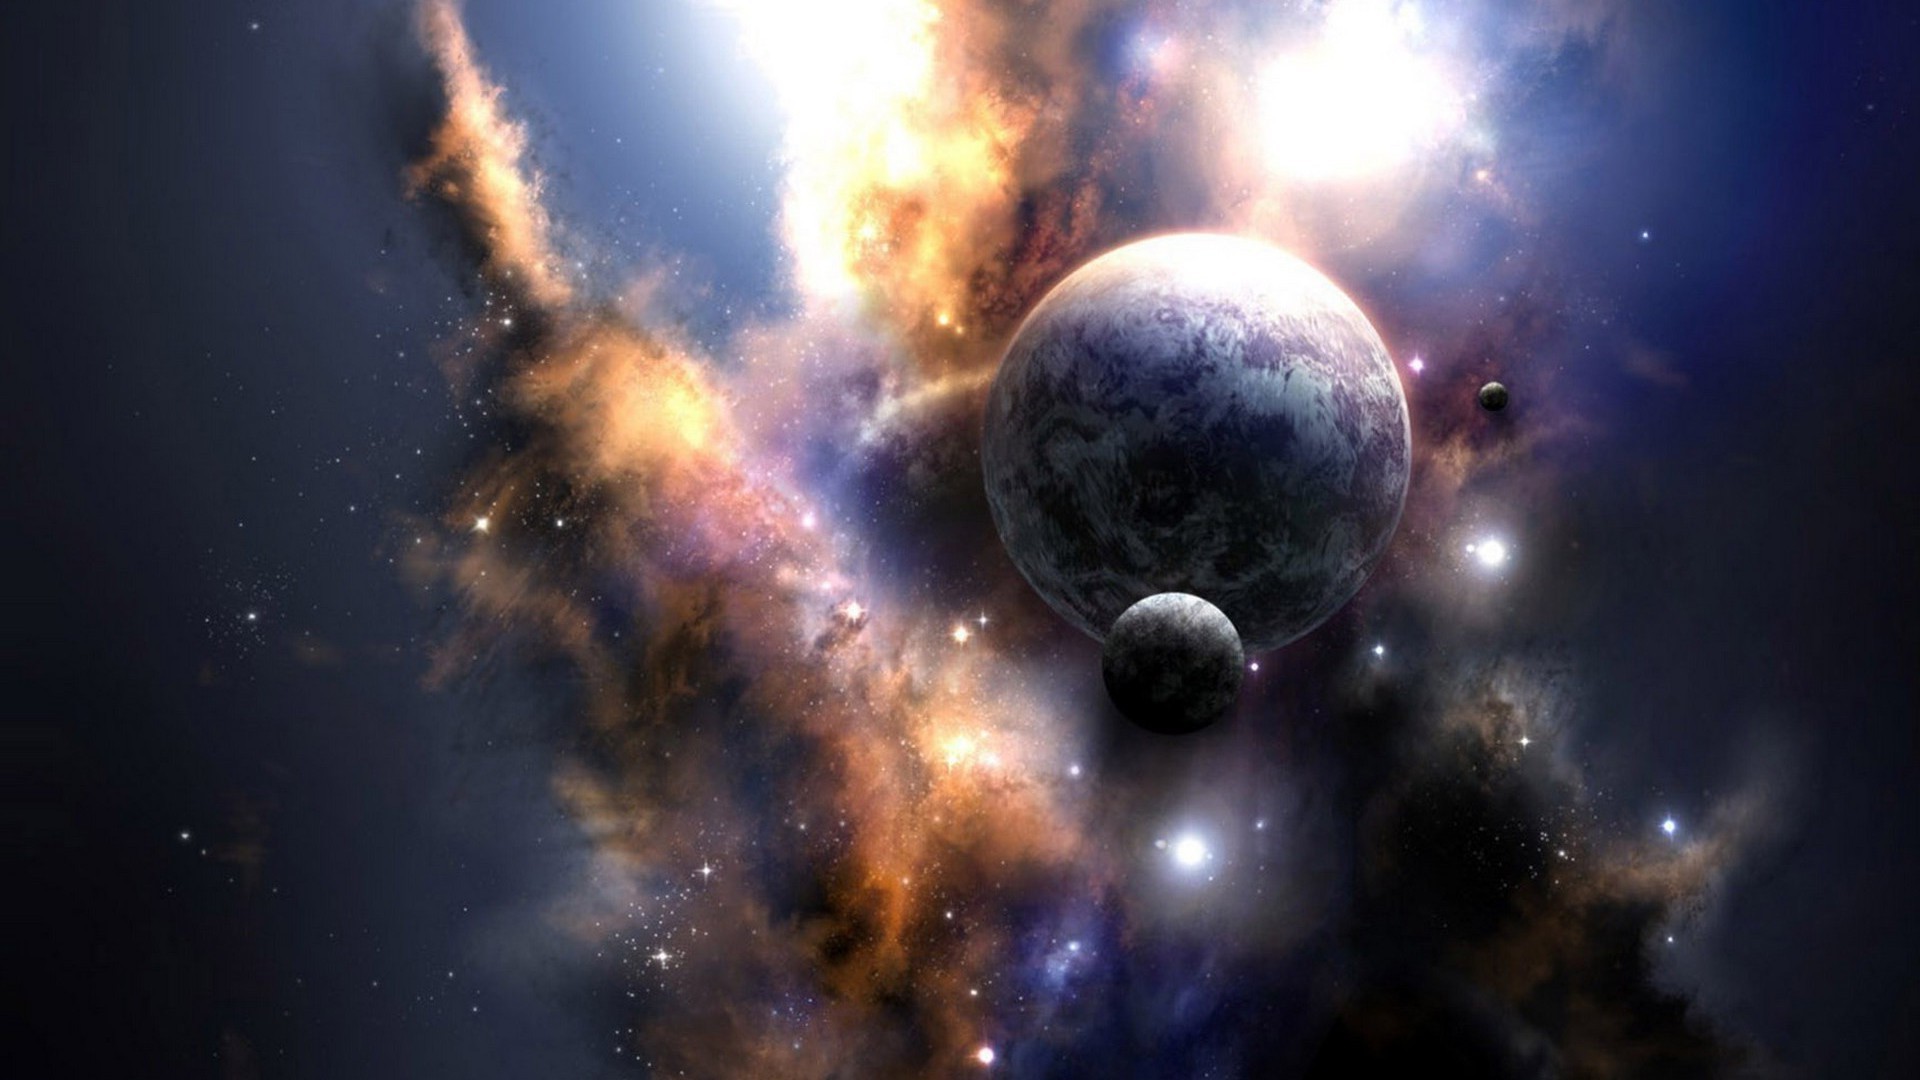 галактики астрономия луна пространство планеты туманность космос созвездие разведка астрология наука бесконечность свет солнечный тайна внешний стеллар телескоп пыль